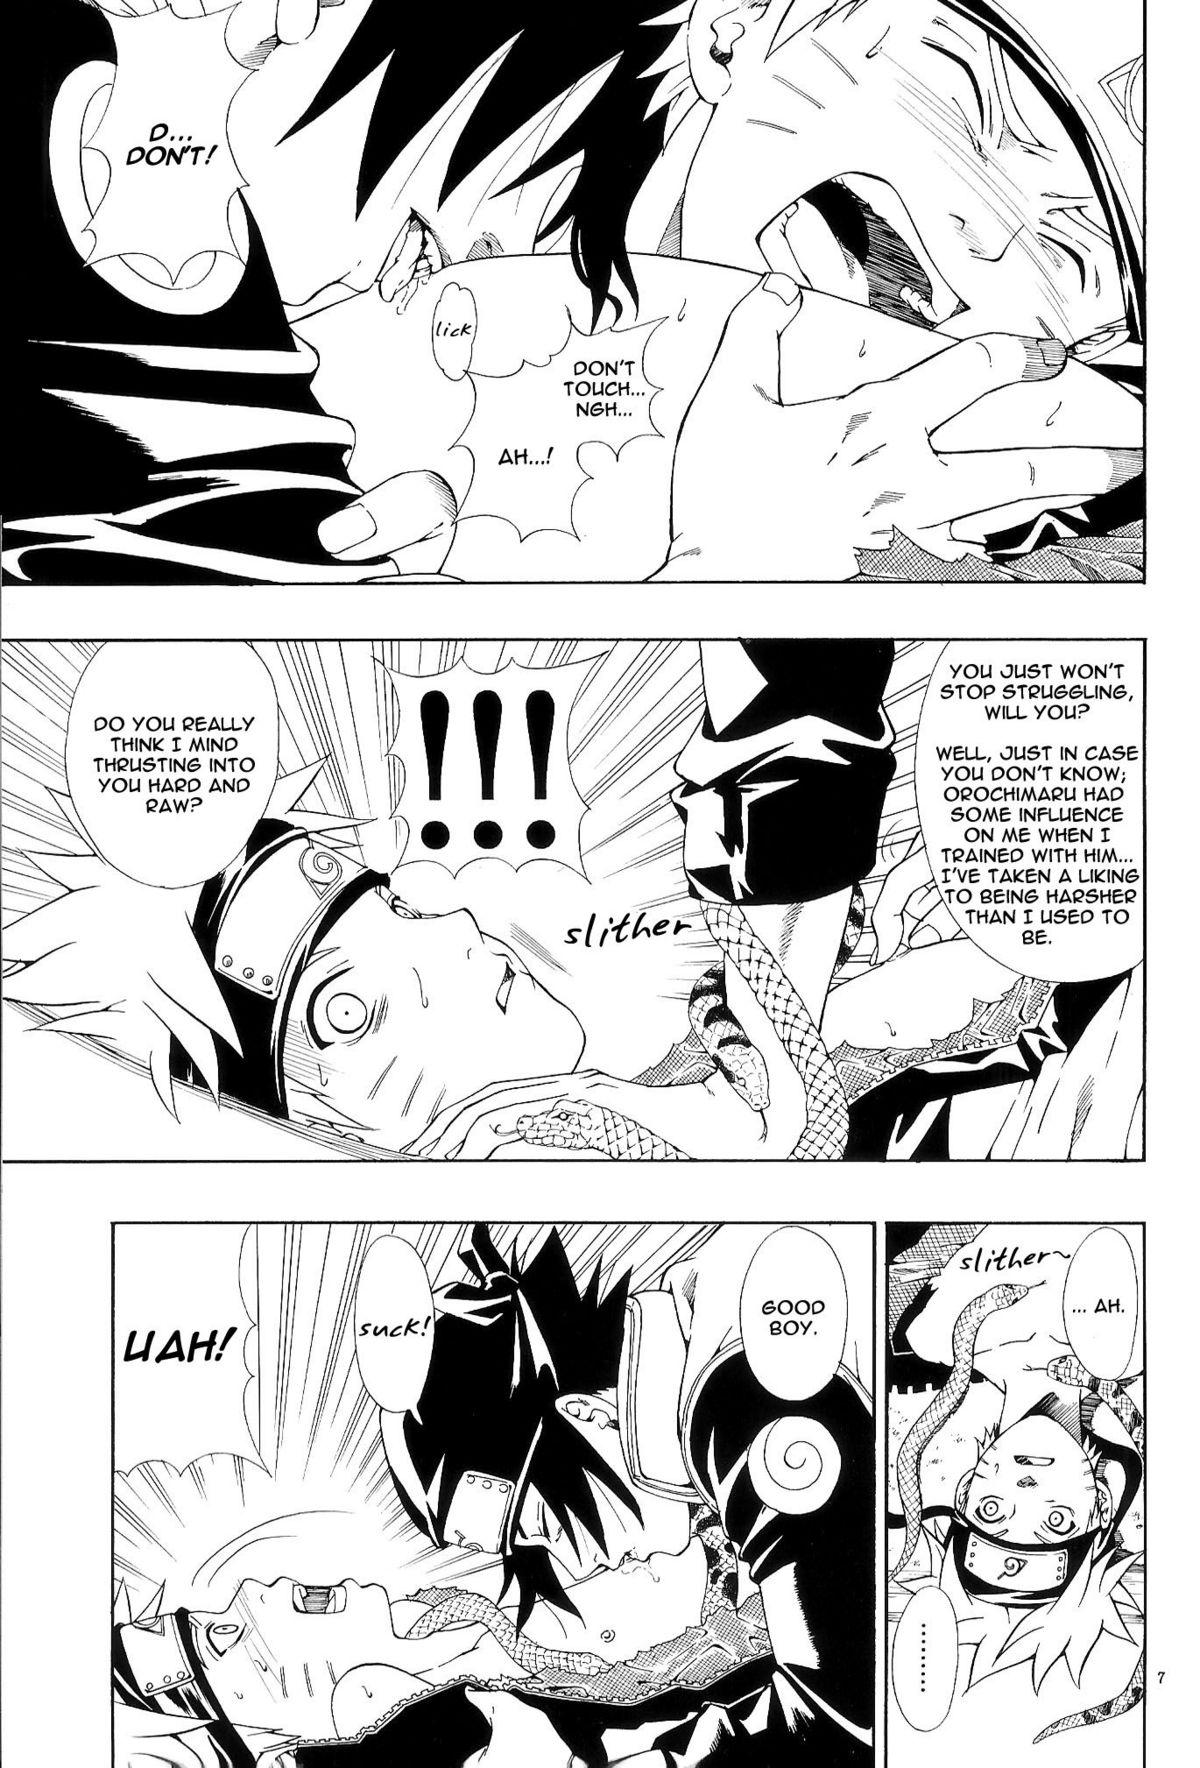 Taboo ERO ERO²: Volume 1.5 (NARUTO) [Sasuke X Naruto] YAOI -ENG- - Naruto Straight Porn - Page 6